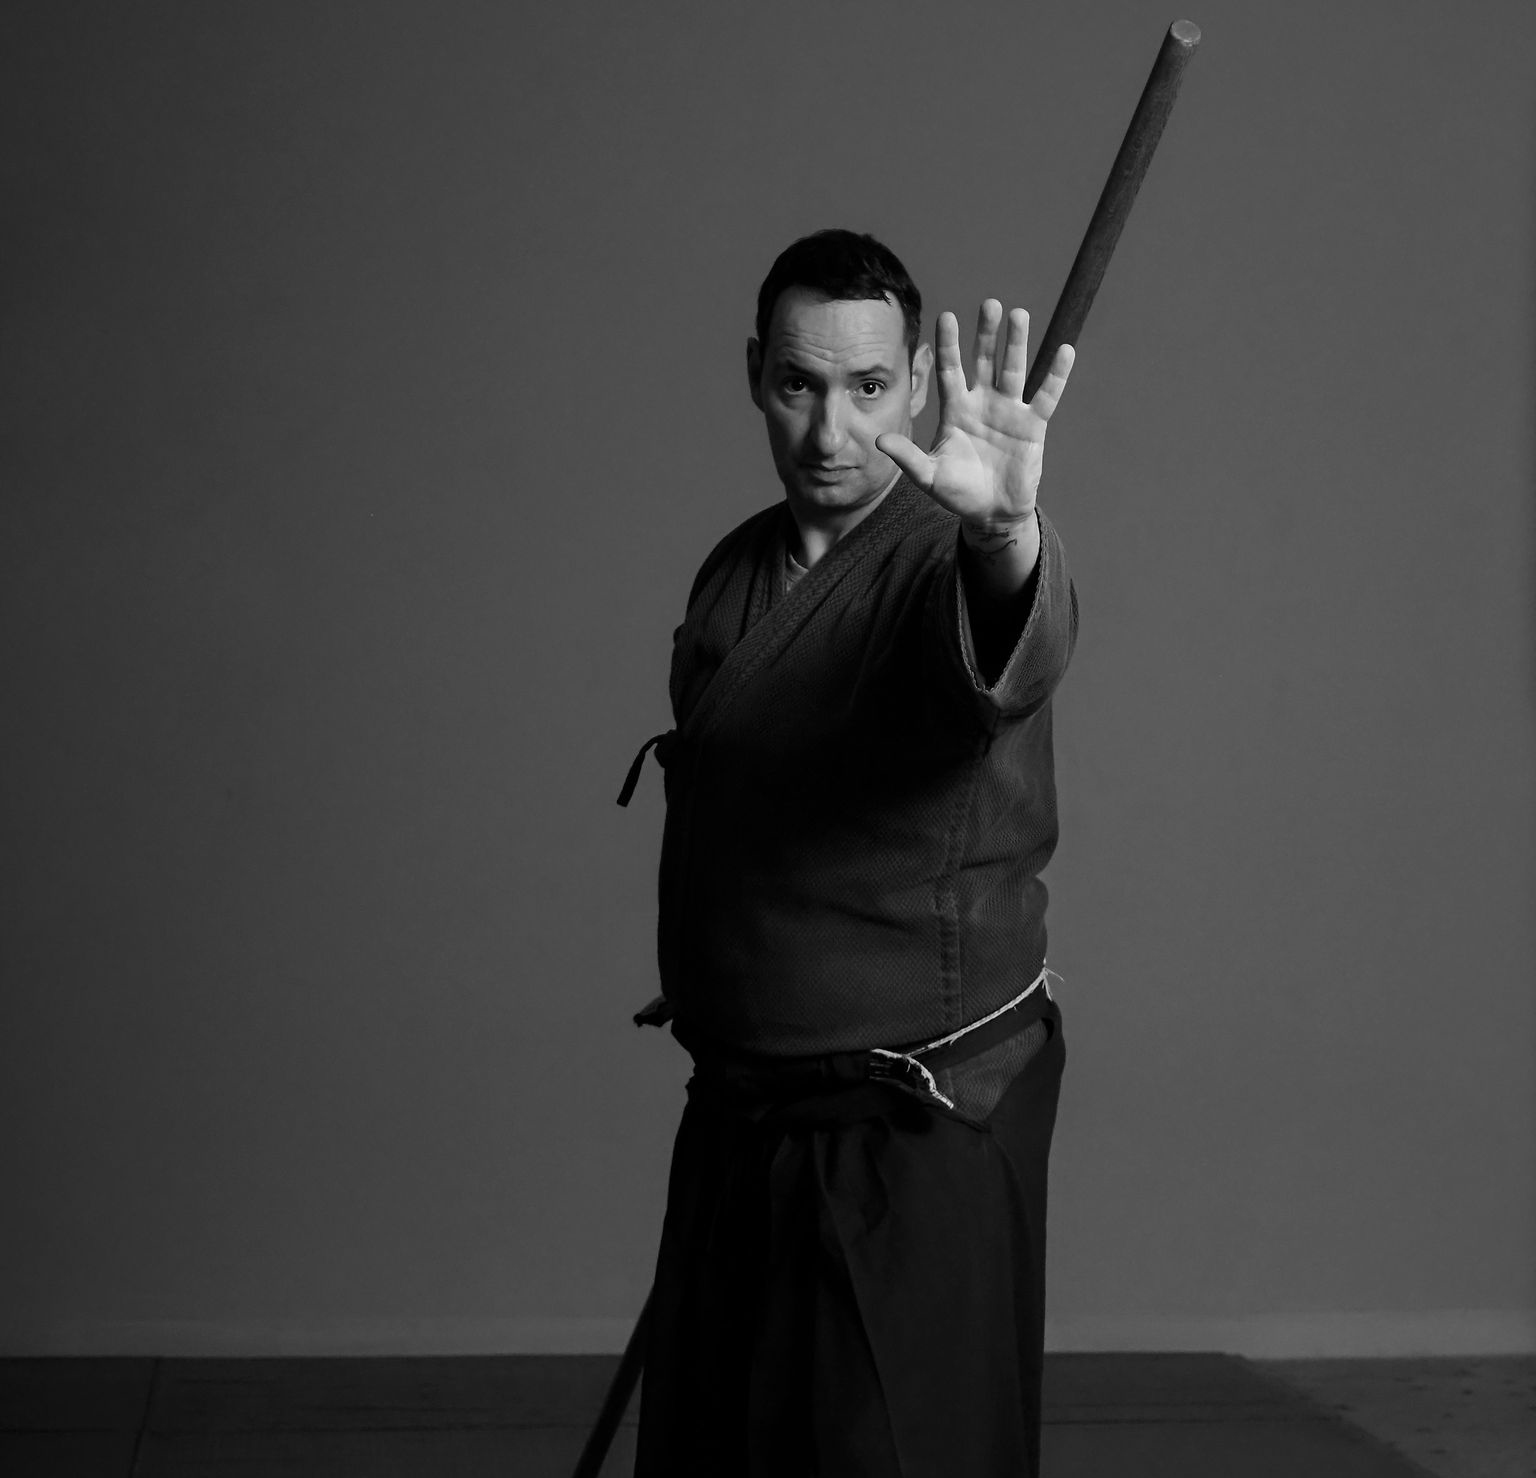 Katori Shinto Ryu